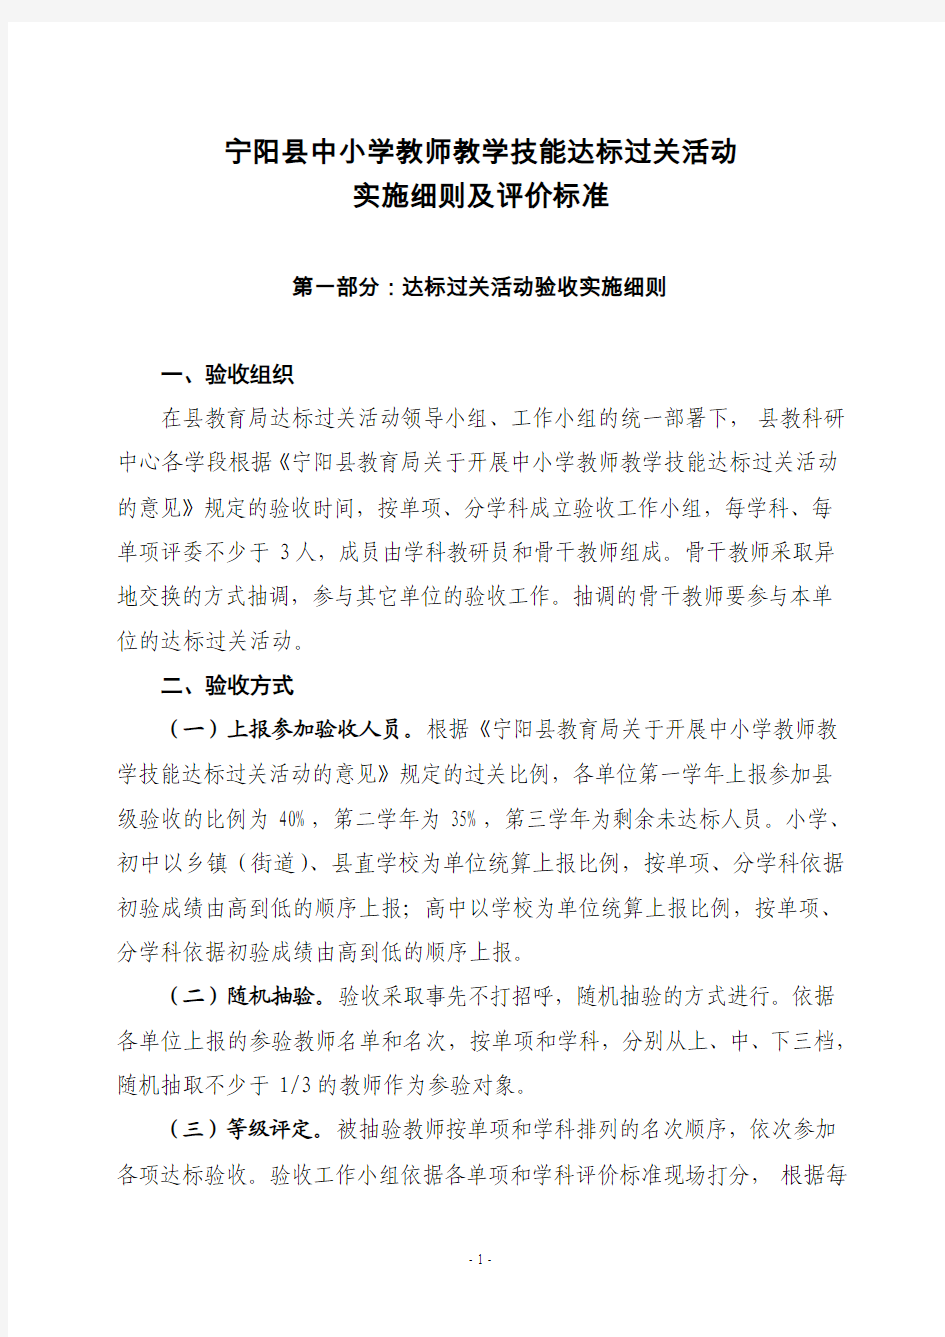 宁阳县中小学教师教学技能达标过关活动实施细则